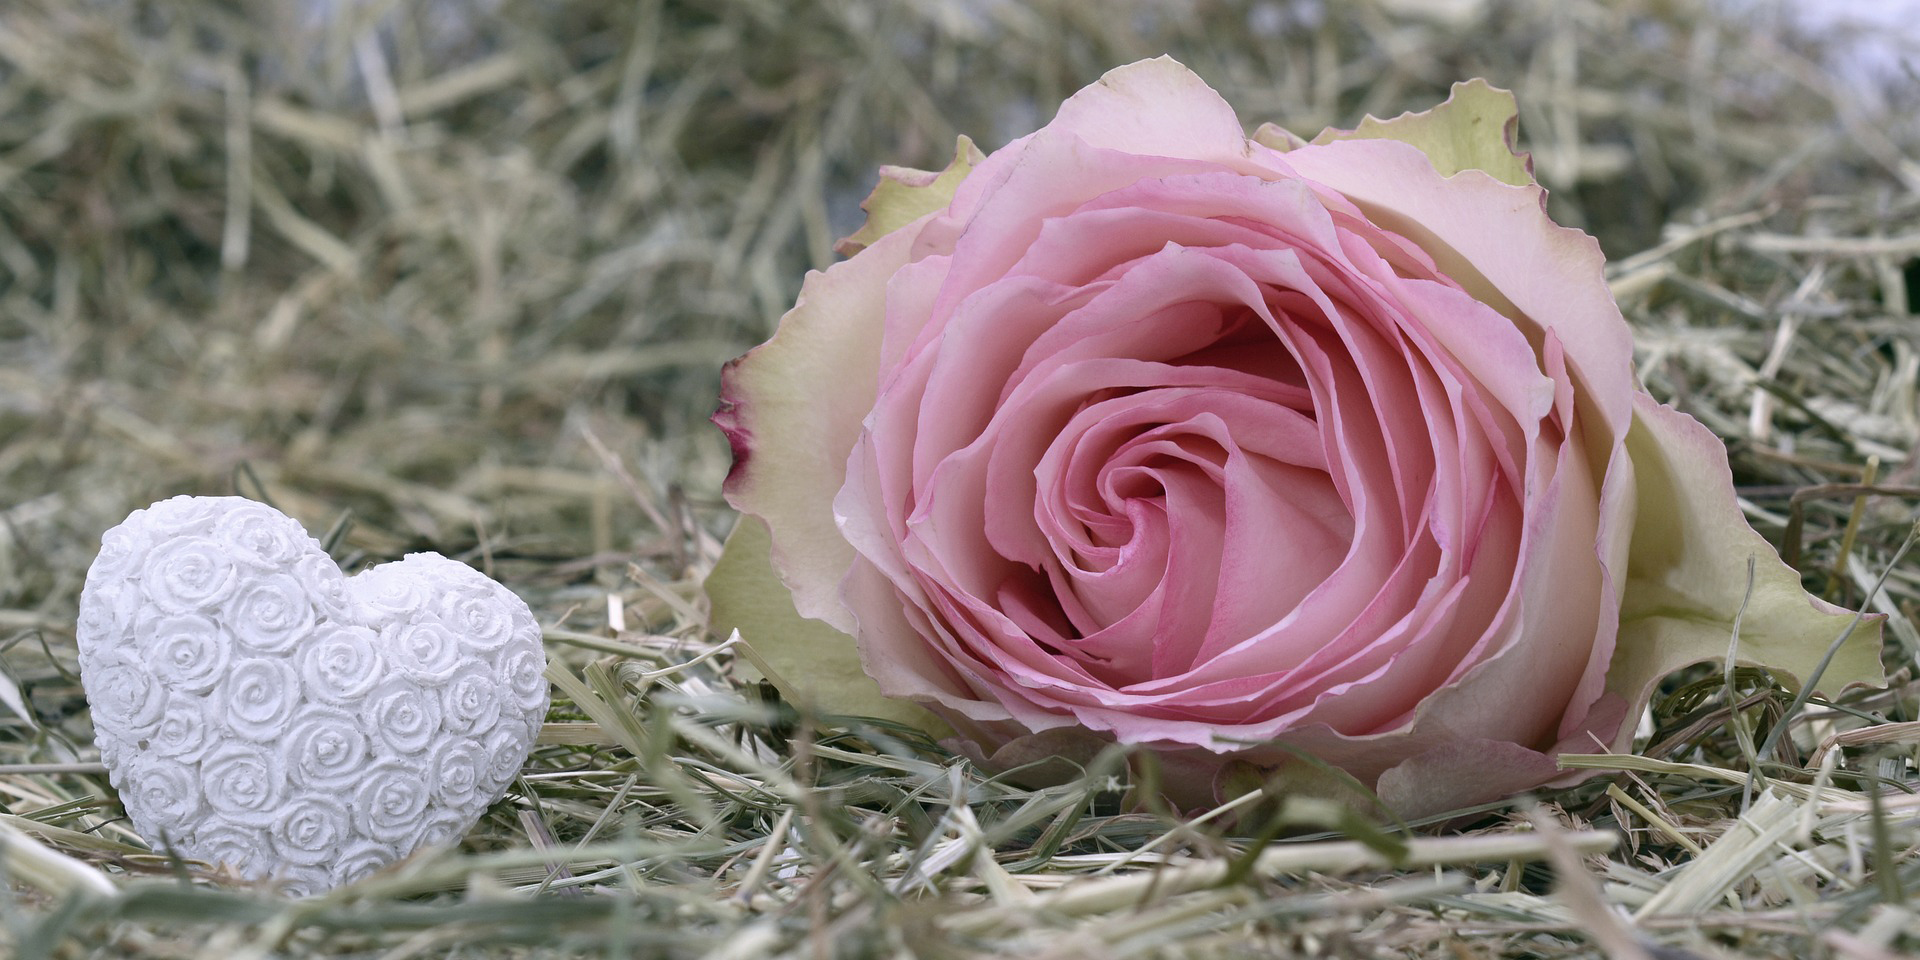 Rosafarbene Rose und weißes Keramikherz im Stroh ,© Bild: pixabay/ancapictures 